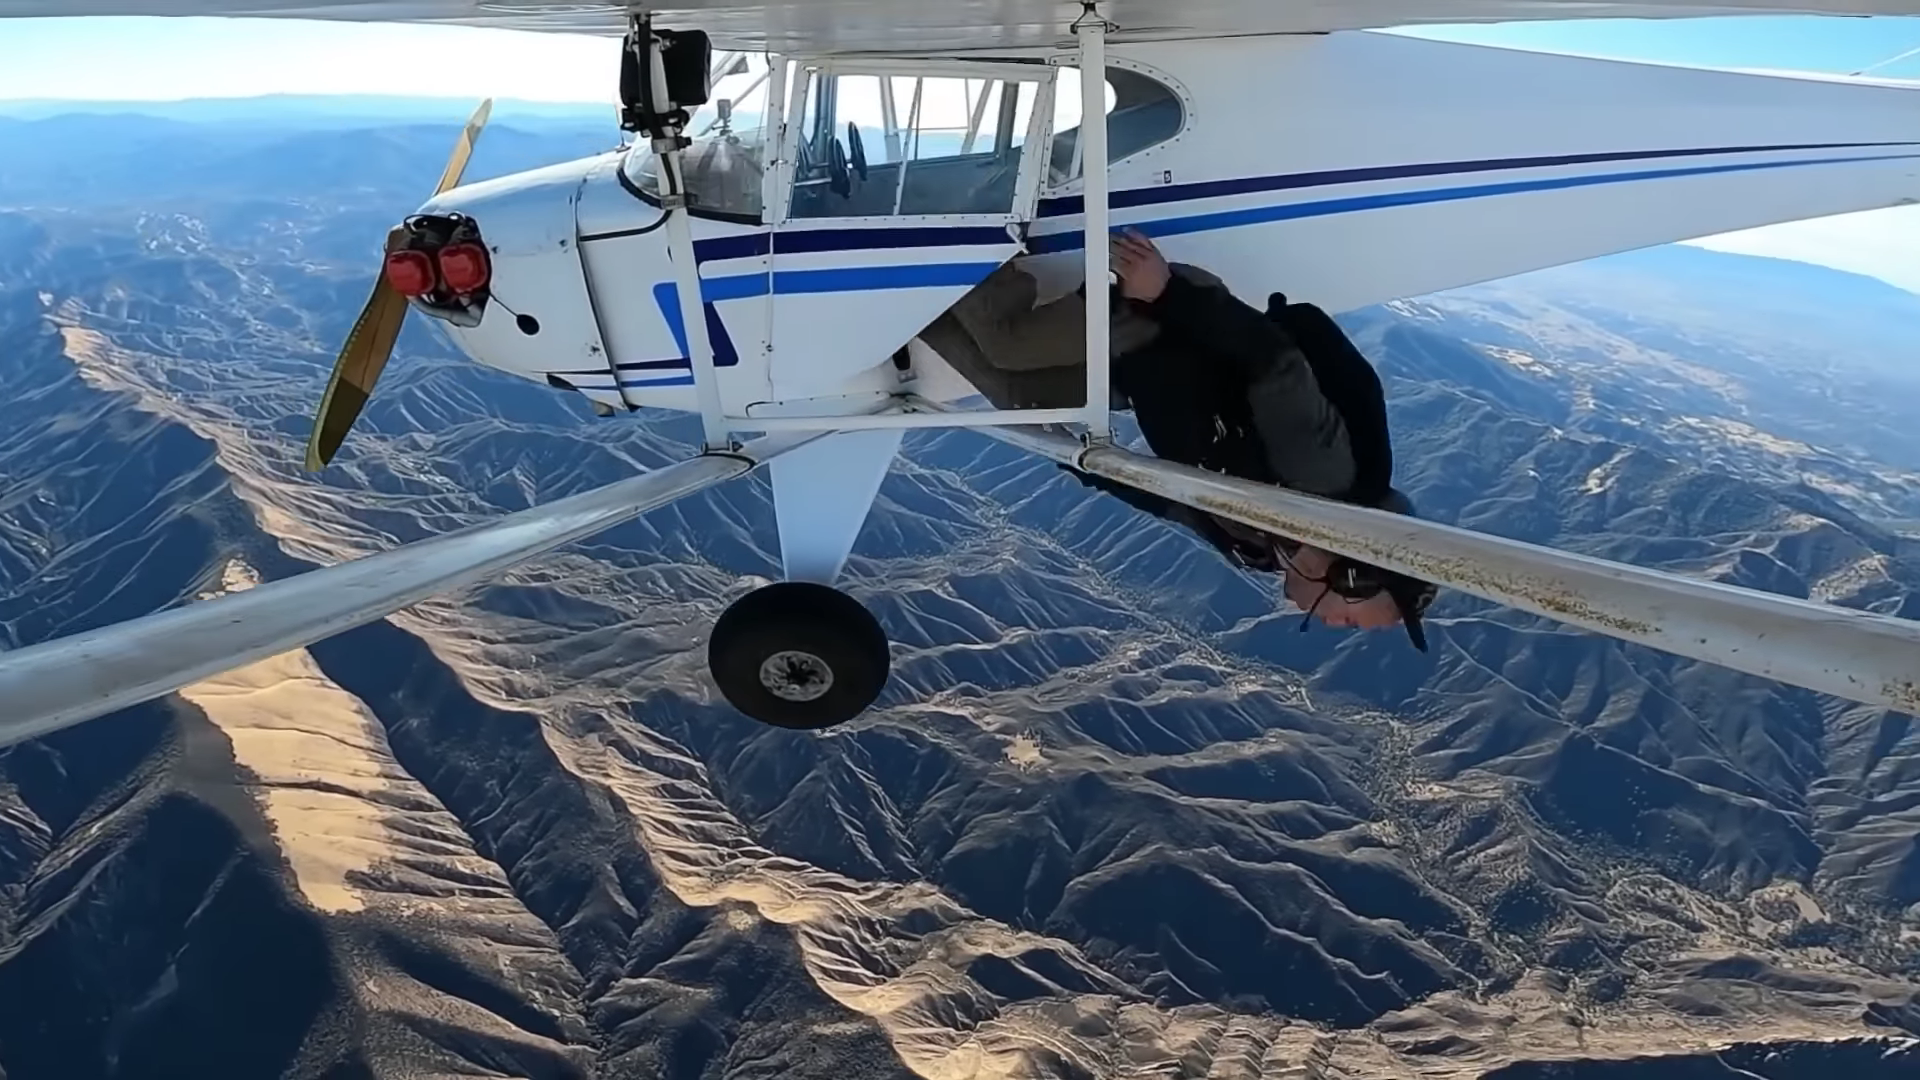 Widok na lecący samolot, Trevor Jacob wyskakujący ze spadochronem, w tle góry